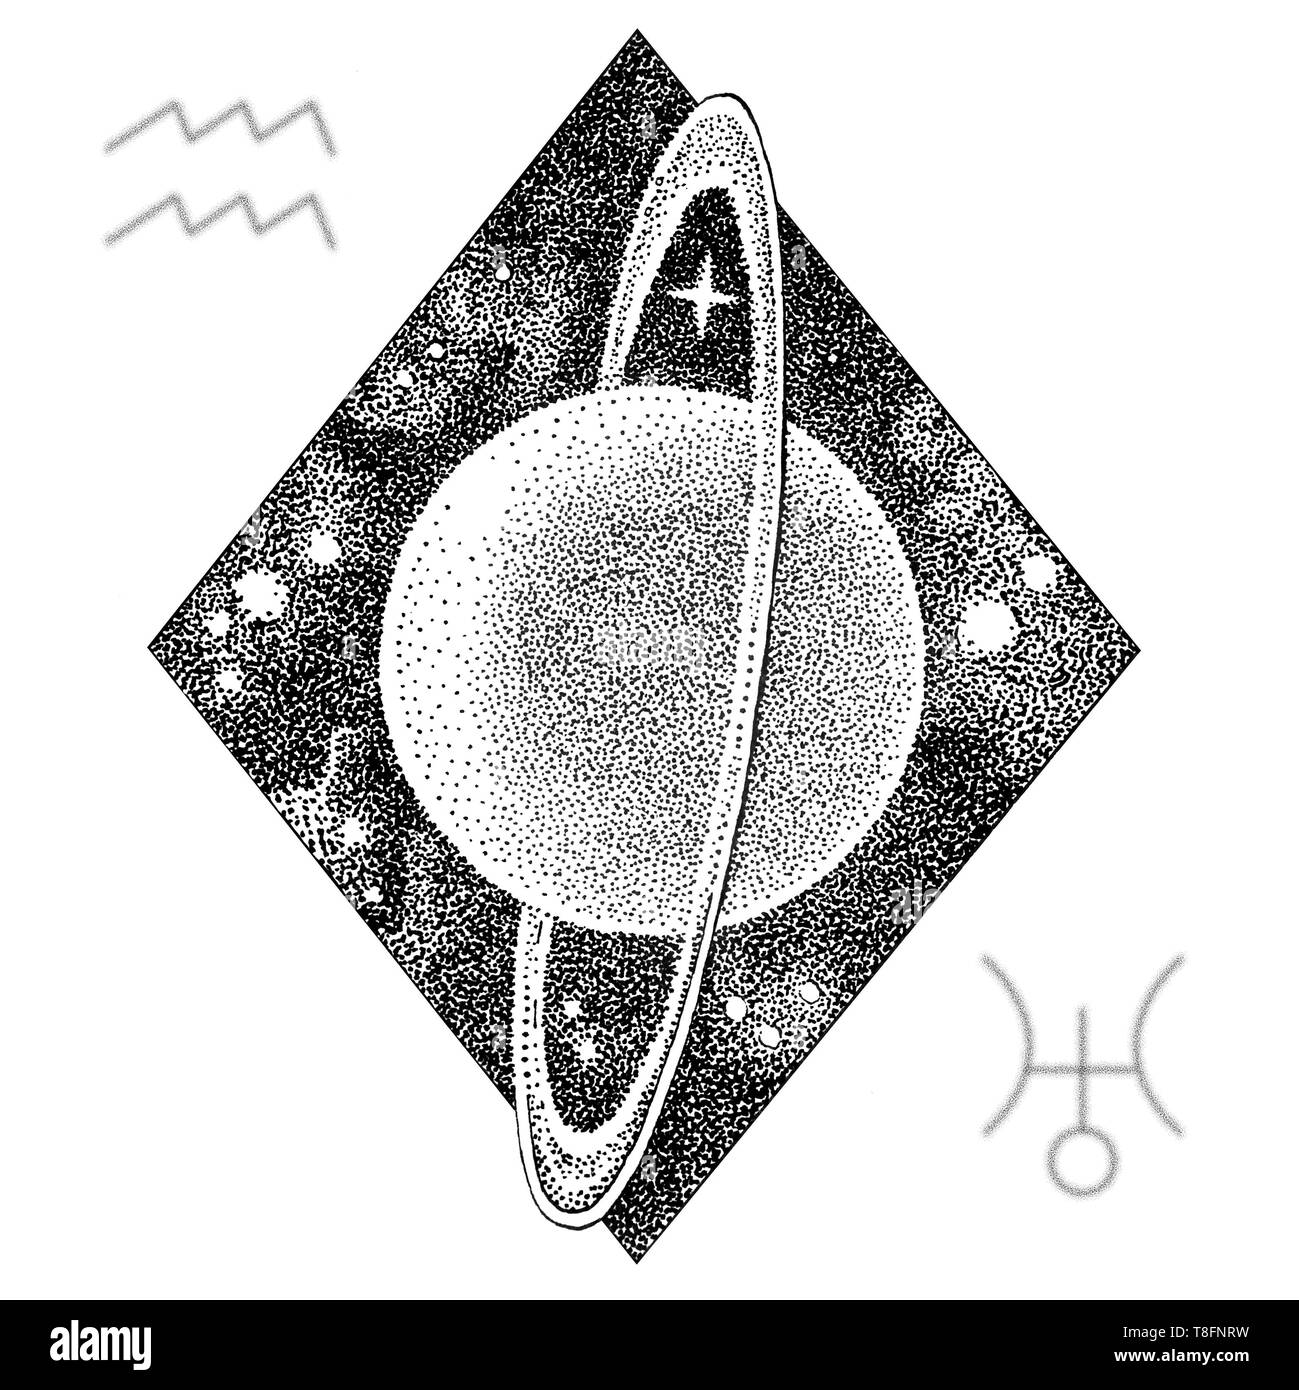 Planète Uranus. Dans l'illustration à la main style dotwork avec Uranus's symbole astrologique et un symbole du Verseau signe du zodiaque. Concept de l'espace, l'astrolo Banque D'Images